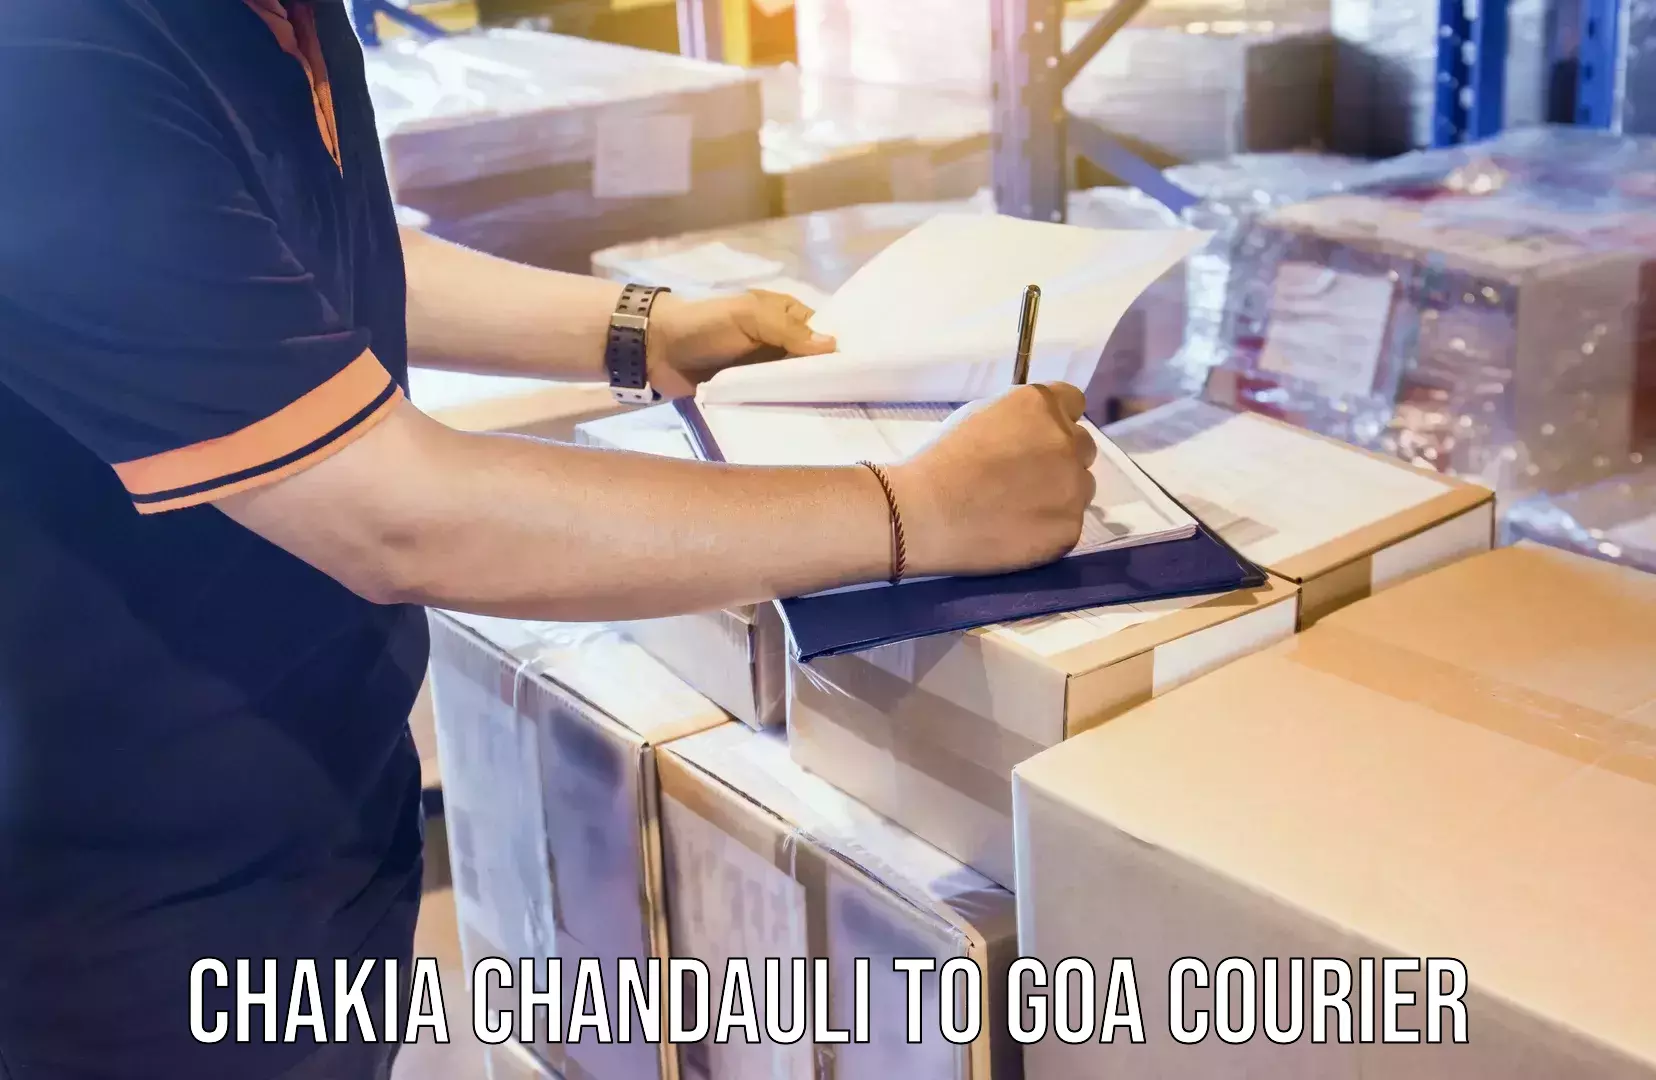 Door-to-door freight service Chakia Chandauli to Goa